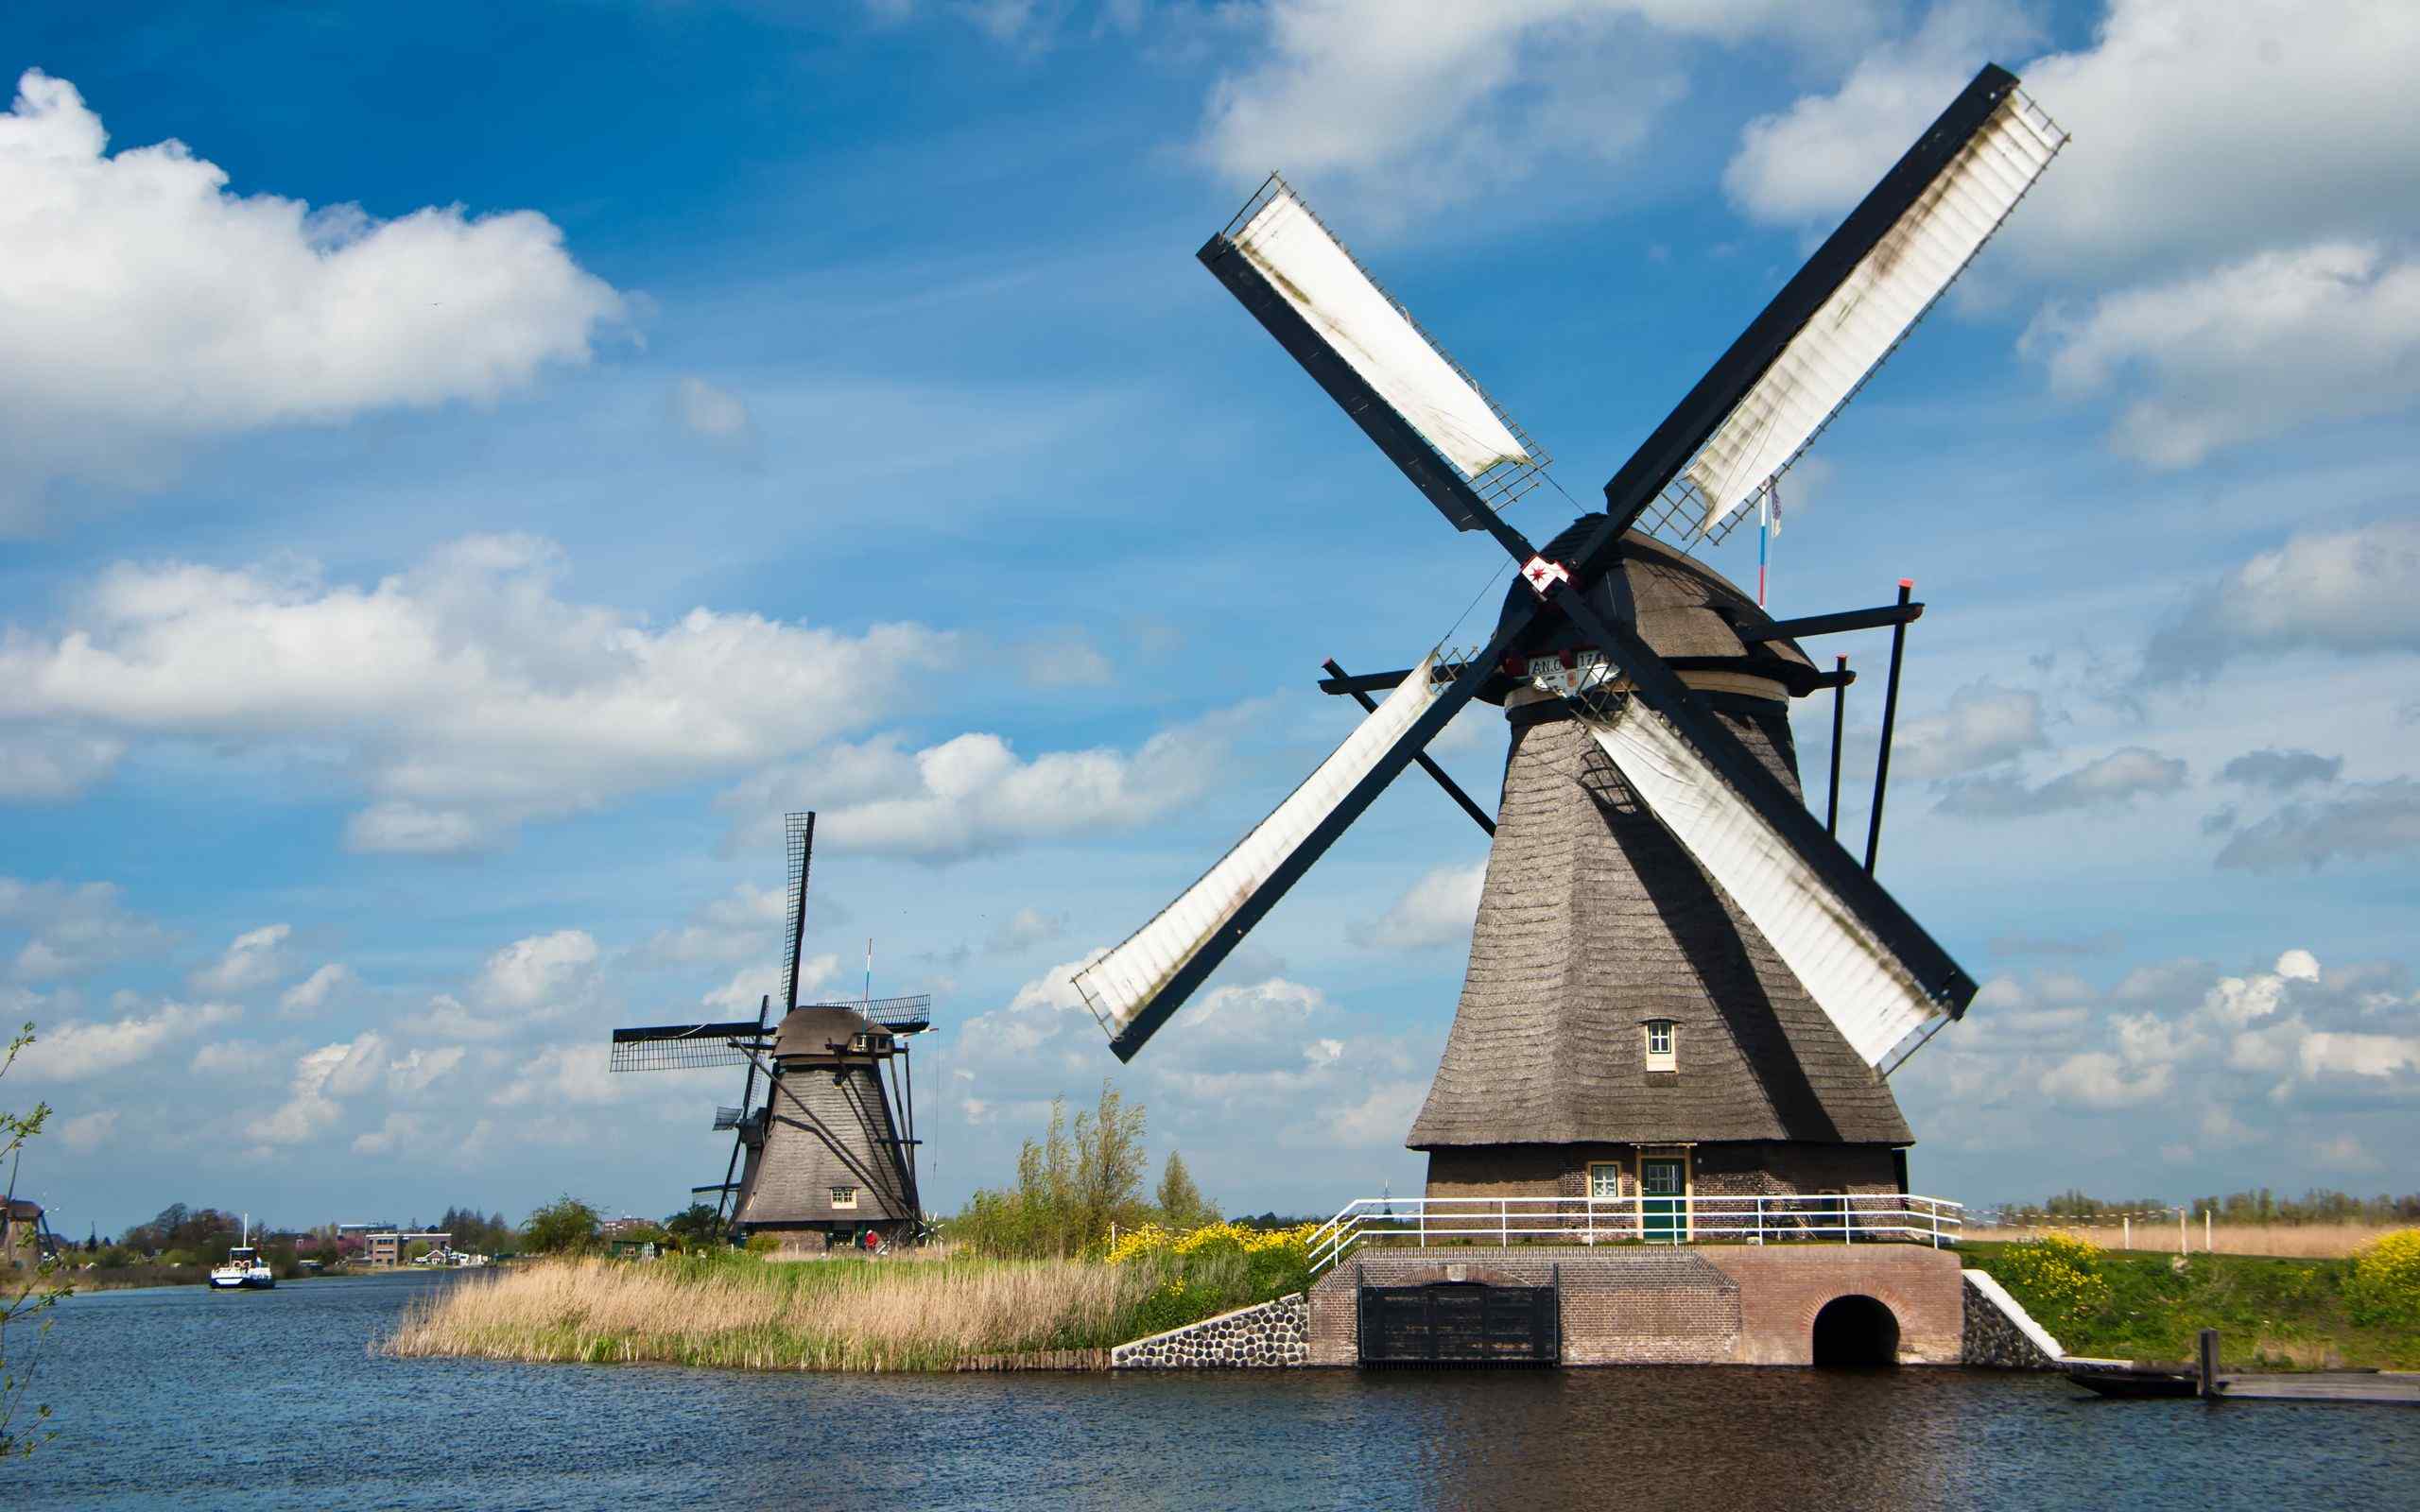 唯美荷兰风车风景图片桌面壁纸